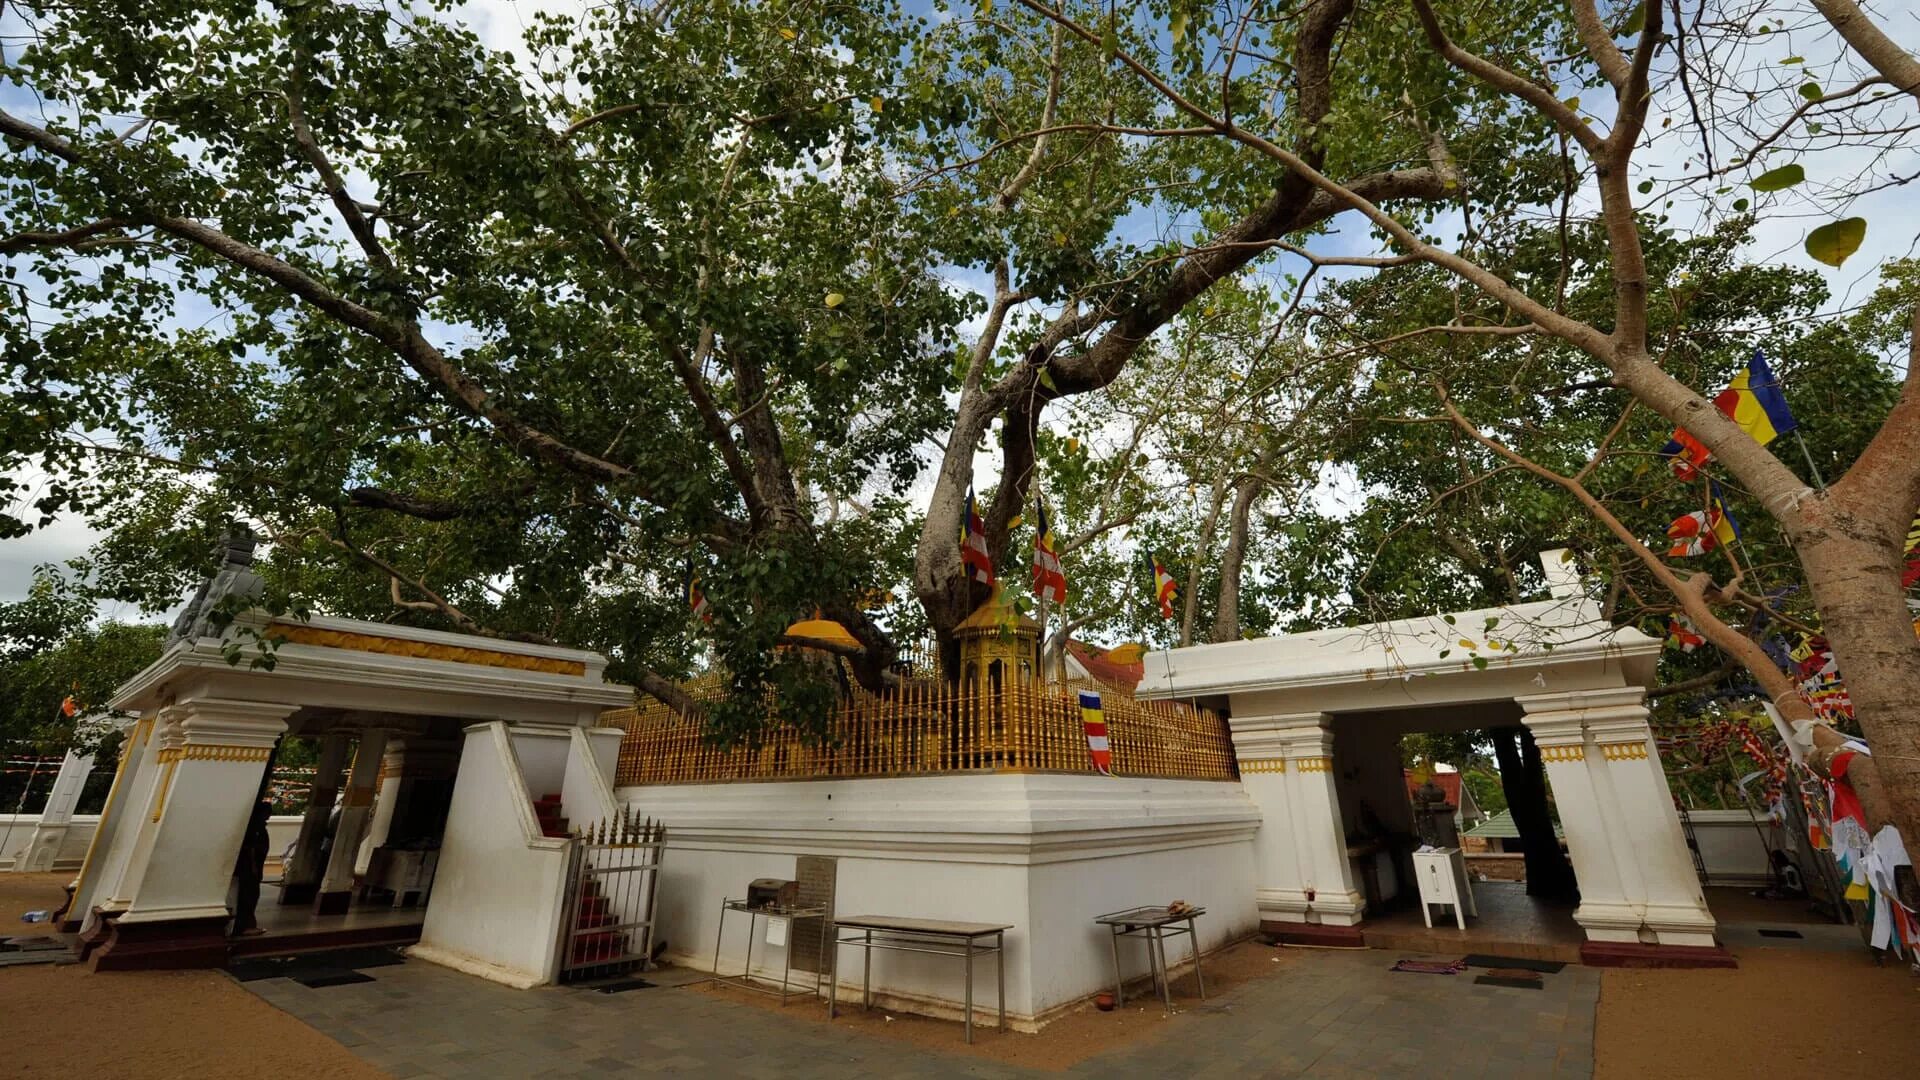 Анурадхапура Шри Ланка дерево Бодхи. Дерево Бодхи в Анурадхапуре. Дерево Бодхи на Шри Ланке. Дерево Шри Маха Бодхи.